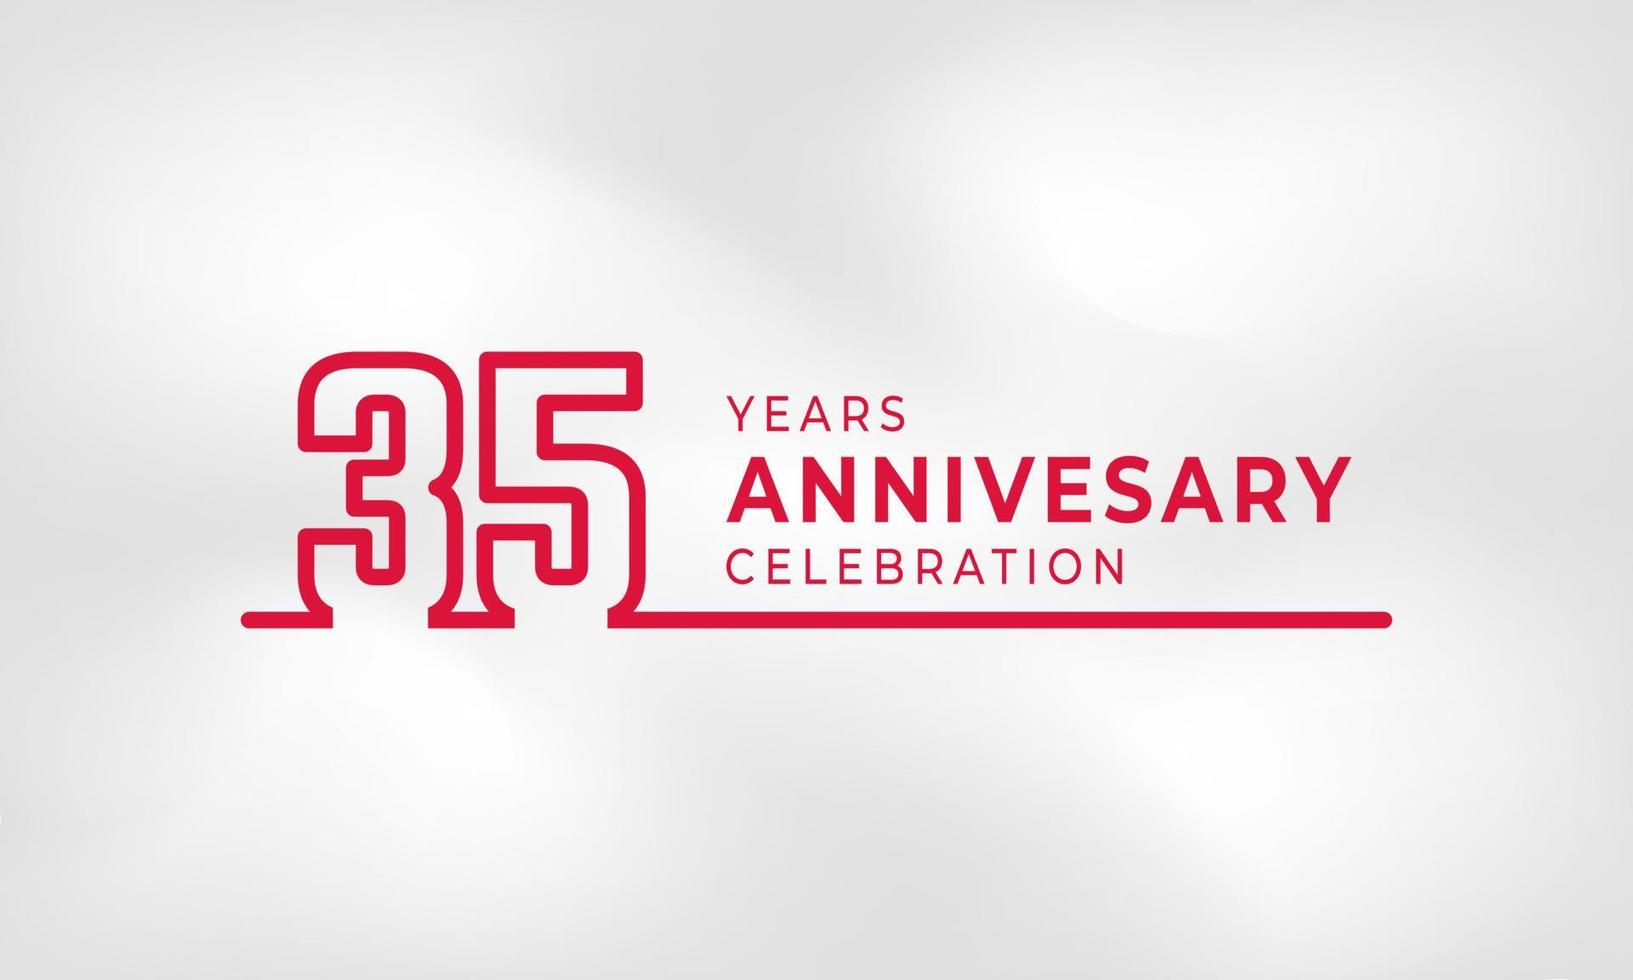 Célébration de l'anniversaire de 35 ans numéro de contour du logotype lié couleur rouge pour l'événement de célébration, le mariage, la carte de voeux et l'invitation isolés sur fond de texture blanche vecteur